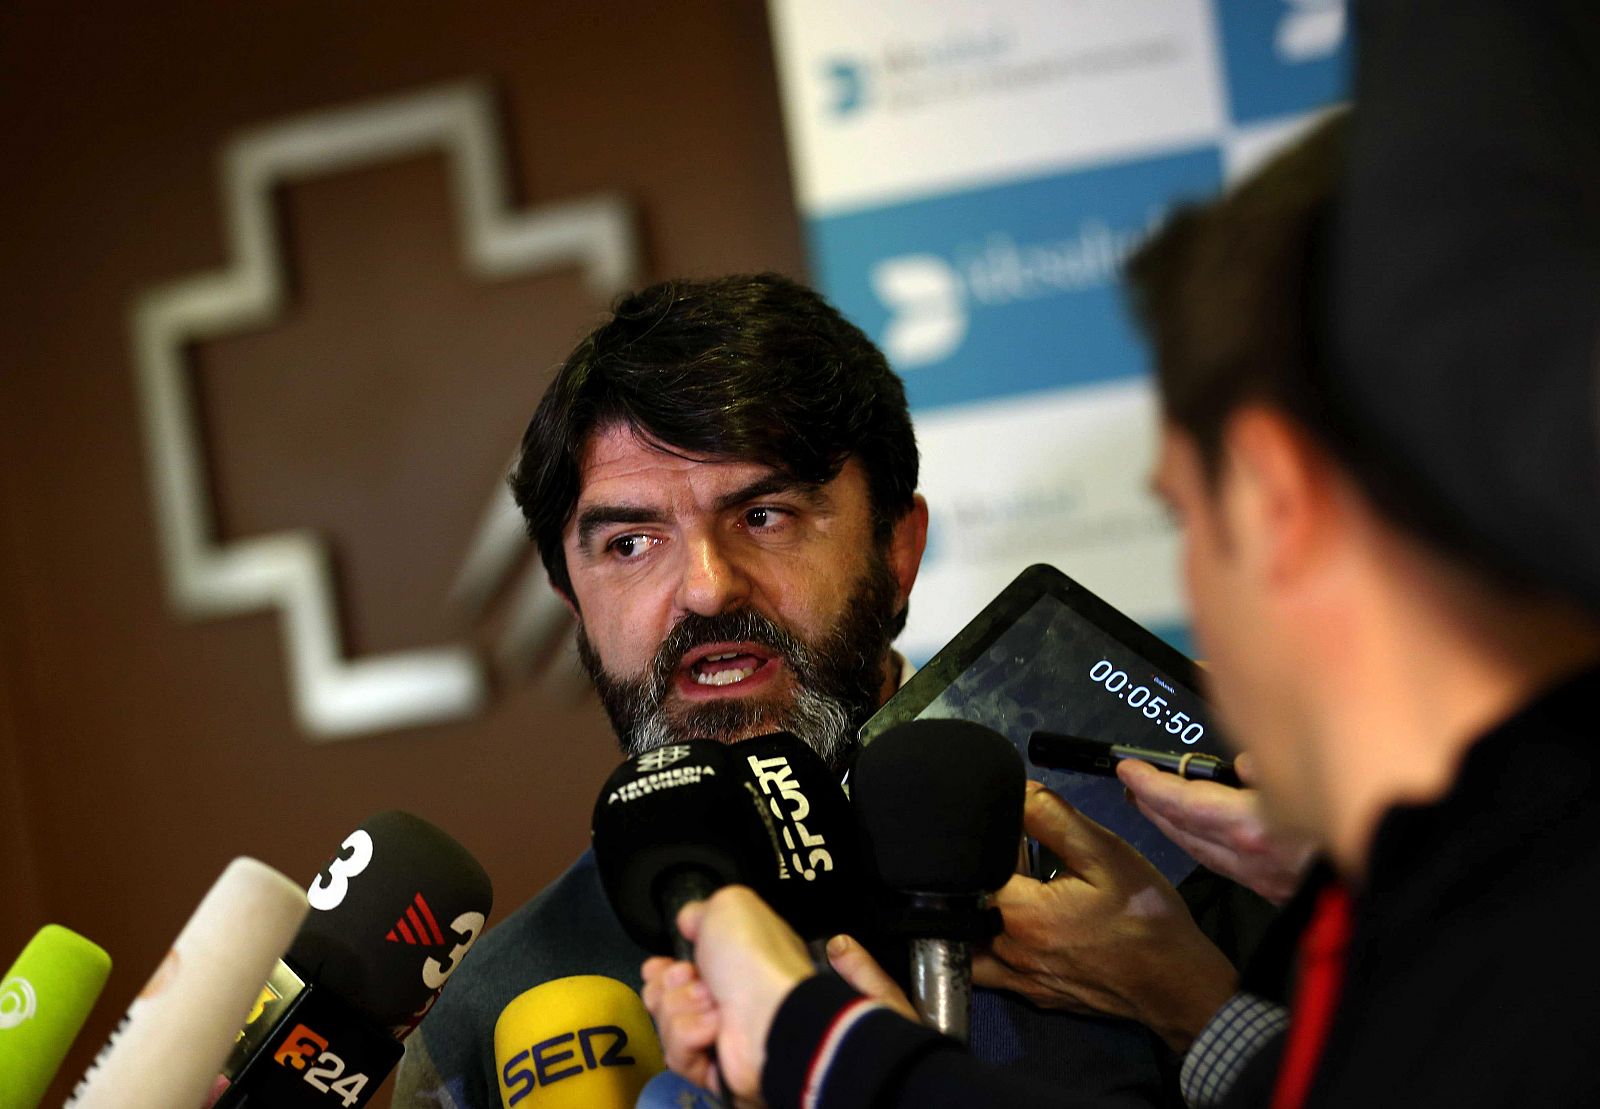 El mánager de Fernando Alonso, Luis García Abad, atiende hoy a los medios en el Hospital General de Cataluña.